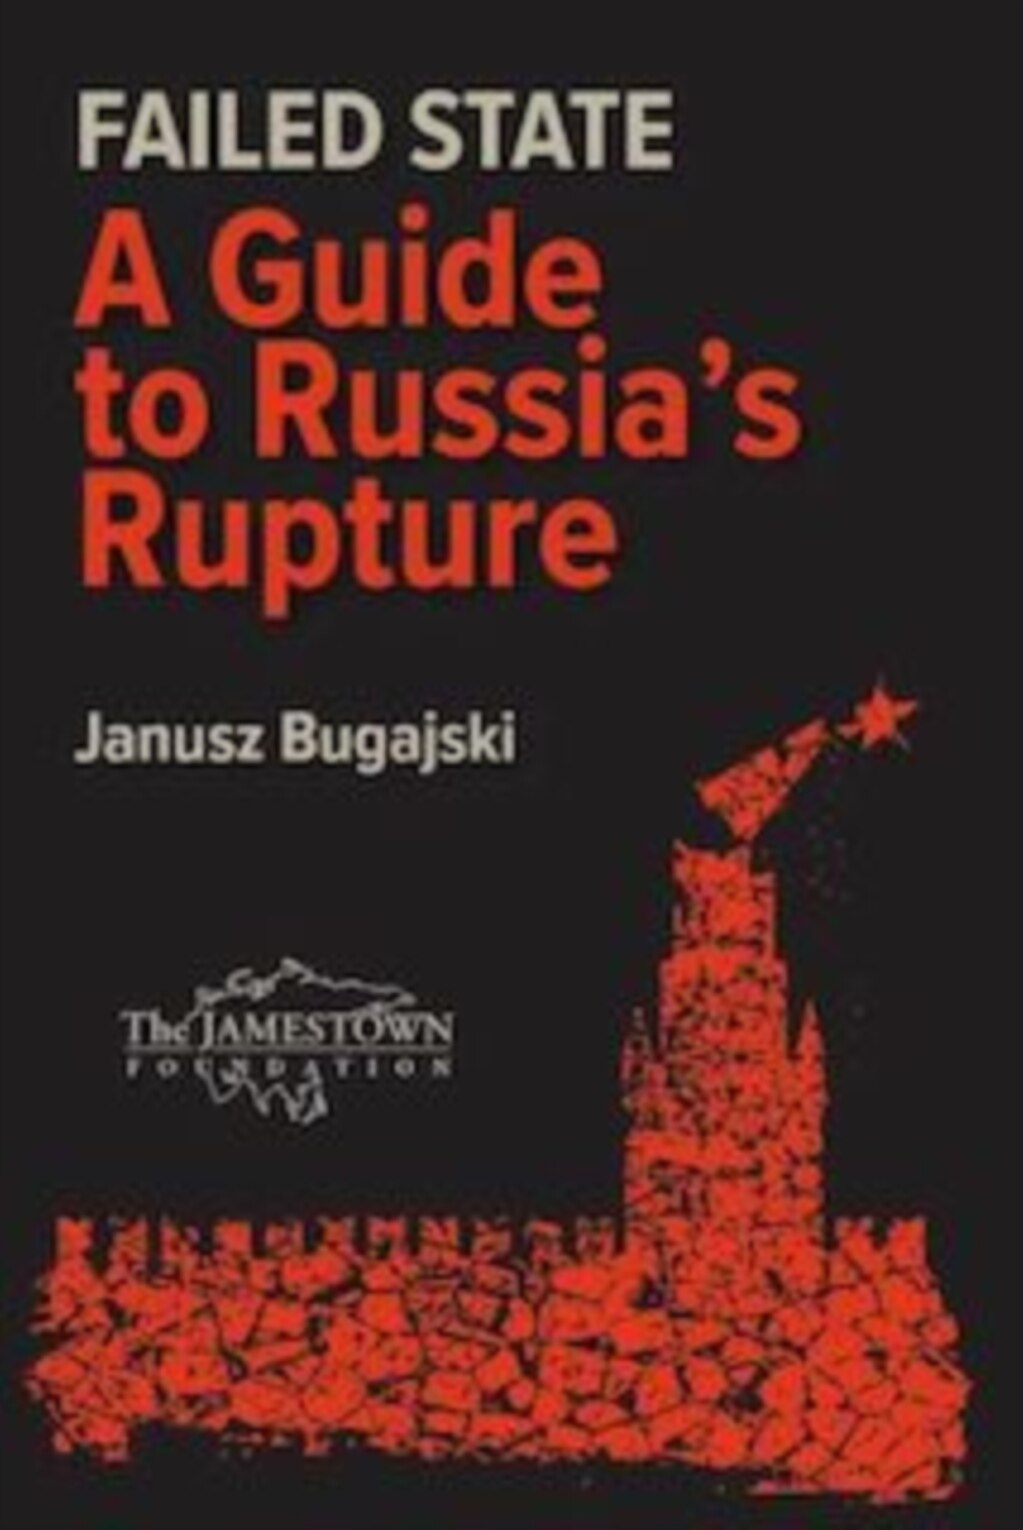 詹姆斯敦基金会高级研究员布加斯基(Janusz Bugajski) 的新书《失败国家：俄罗斯解体指南》（Failed State: A Guide to Russia's Rupture）即将在2022年春季出版。（照片来源：布加斯基提供）(photo:VOA)